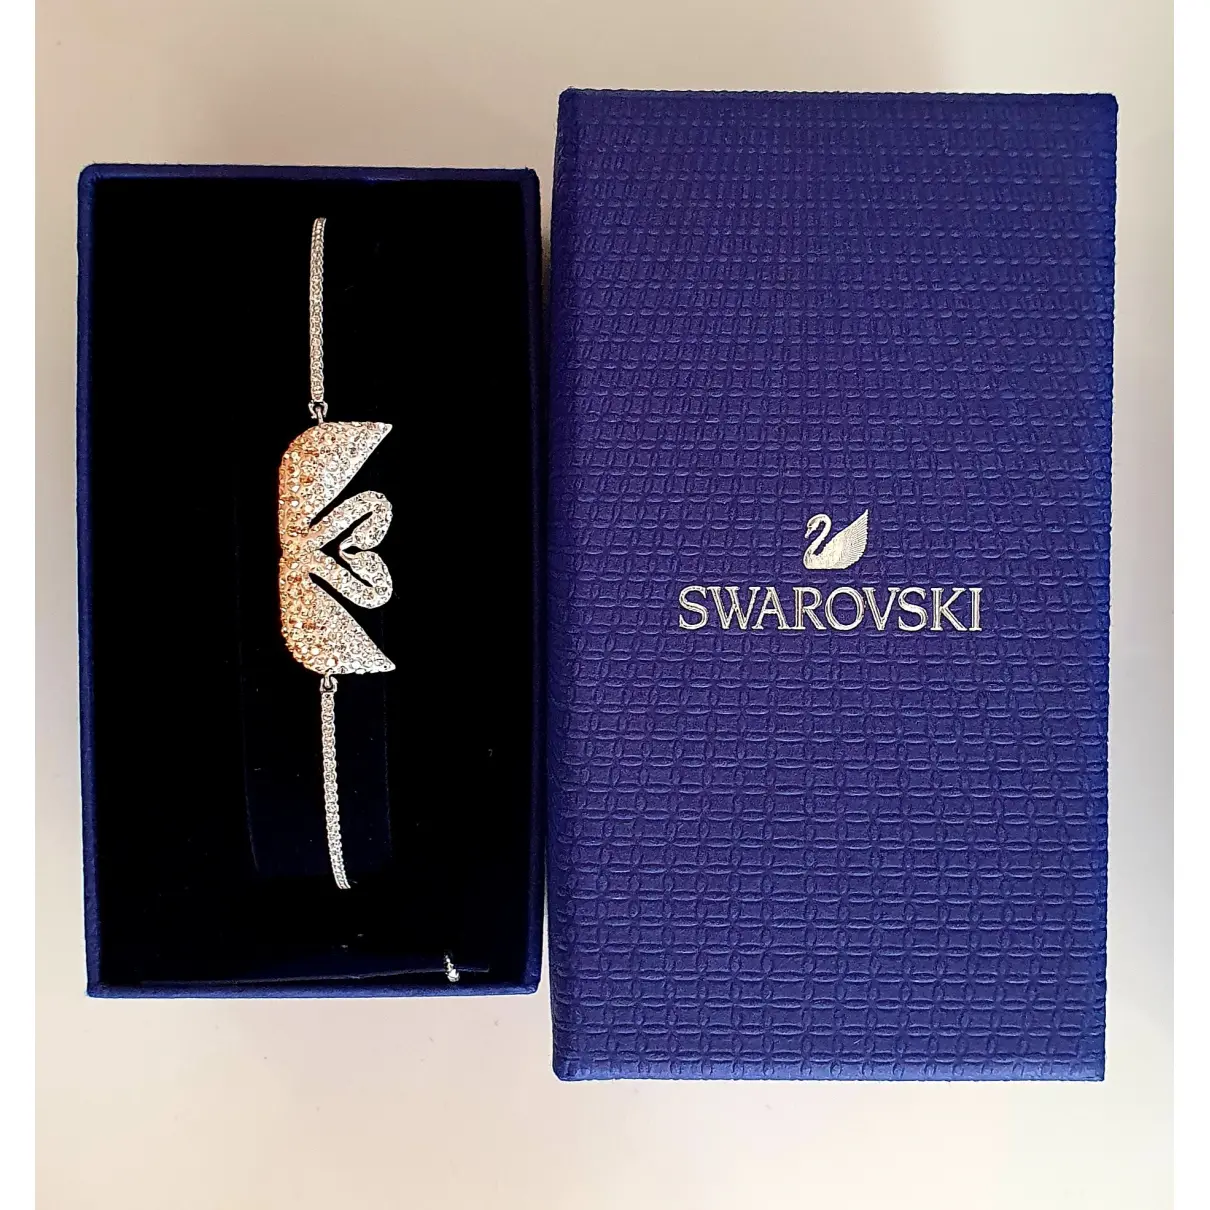 Buy Swarovski Silver Steel Bracelet online